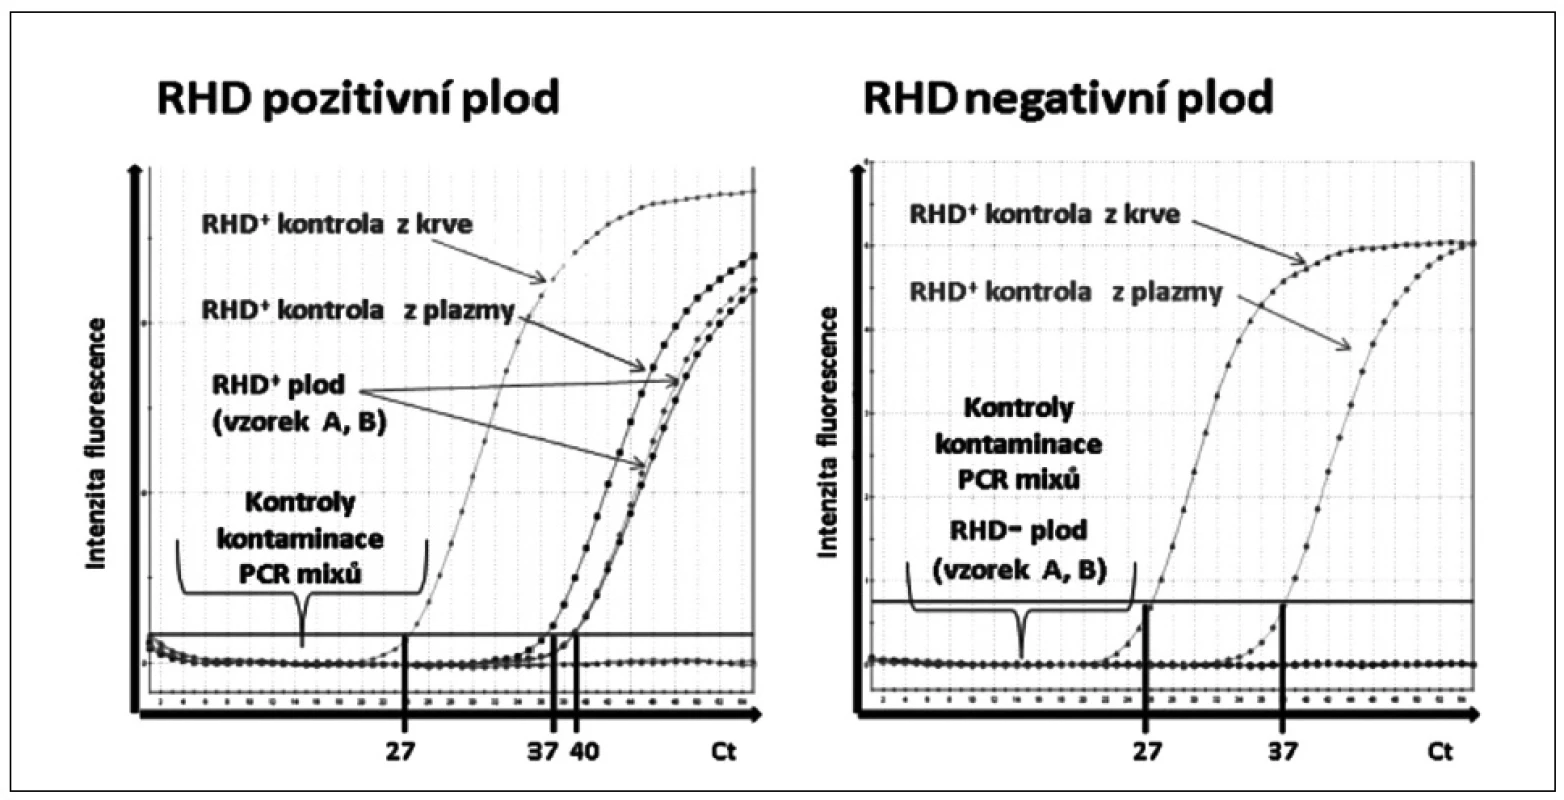 Ukázka rozlišení &lt;i&gt;RHD&lt;/i&gt; pozitivního a &lt;i&gt;RHD&lt;/i&gt; negativního plodu pomocí real-time polymerázové řetězové reakce (PCR).
Amplifikační křivky znázorňují fluorescenční intenzitu exonu 7 genu &lt;i&gt;RHD&lt;/i&gt; v závislosti na počtu PCR cyklů (Ct). &lt;i&gt;RHD&lt;/i&gt;+ kontrola z krve: &lt;i&gt;RHD&lt;/i&gt;+ DNA izolovaná z leukocytů periferní krve. &lt;i&gt;RHD&lt;/i&gt;+ kontrola z plazmy: &lt;i&gt;RHD&lt;/i&gt;+ DNA izolovaná z krevní plazmy těhotné &lt;i&gt;RHD&lt;/i&gt;- ženy. &lt;i&gt;RHD&lt;/i&gt;+ plod: &lt;i&gt;RHD&lt;/i&gt;+ vzorky („A“a „B“) DNA izolované z krevní plazmy těhotné &lt;i&gt;RHD&lt;/i&gt;- ženy. &lt;i&gt;RHD&lt;/i&gt;- plod: &lt;i&gt;RHD&lt;/i&gt;- vzorek DNA izolované z krevní plazmy těhotné &lt;i&gt;RHD&lt;/i&gt; negativní ženy. Kontroly kontaminace PCR &lt;i&gt;RHD&lt;/i&gt;: PCR mix pro DNA izolovanou z leukocytů s PCR vodou a PCR mix pro DNA izolovanou z plazmy s PCR vodou.